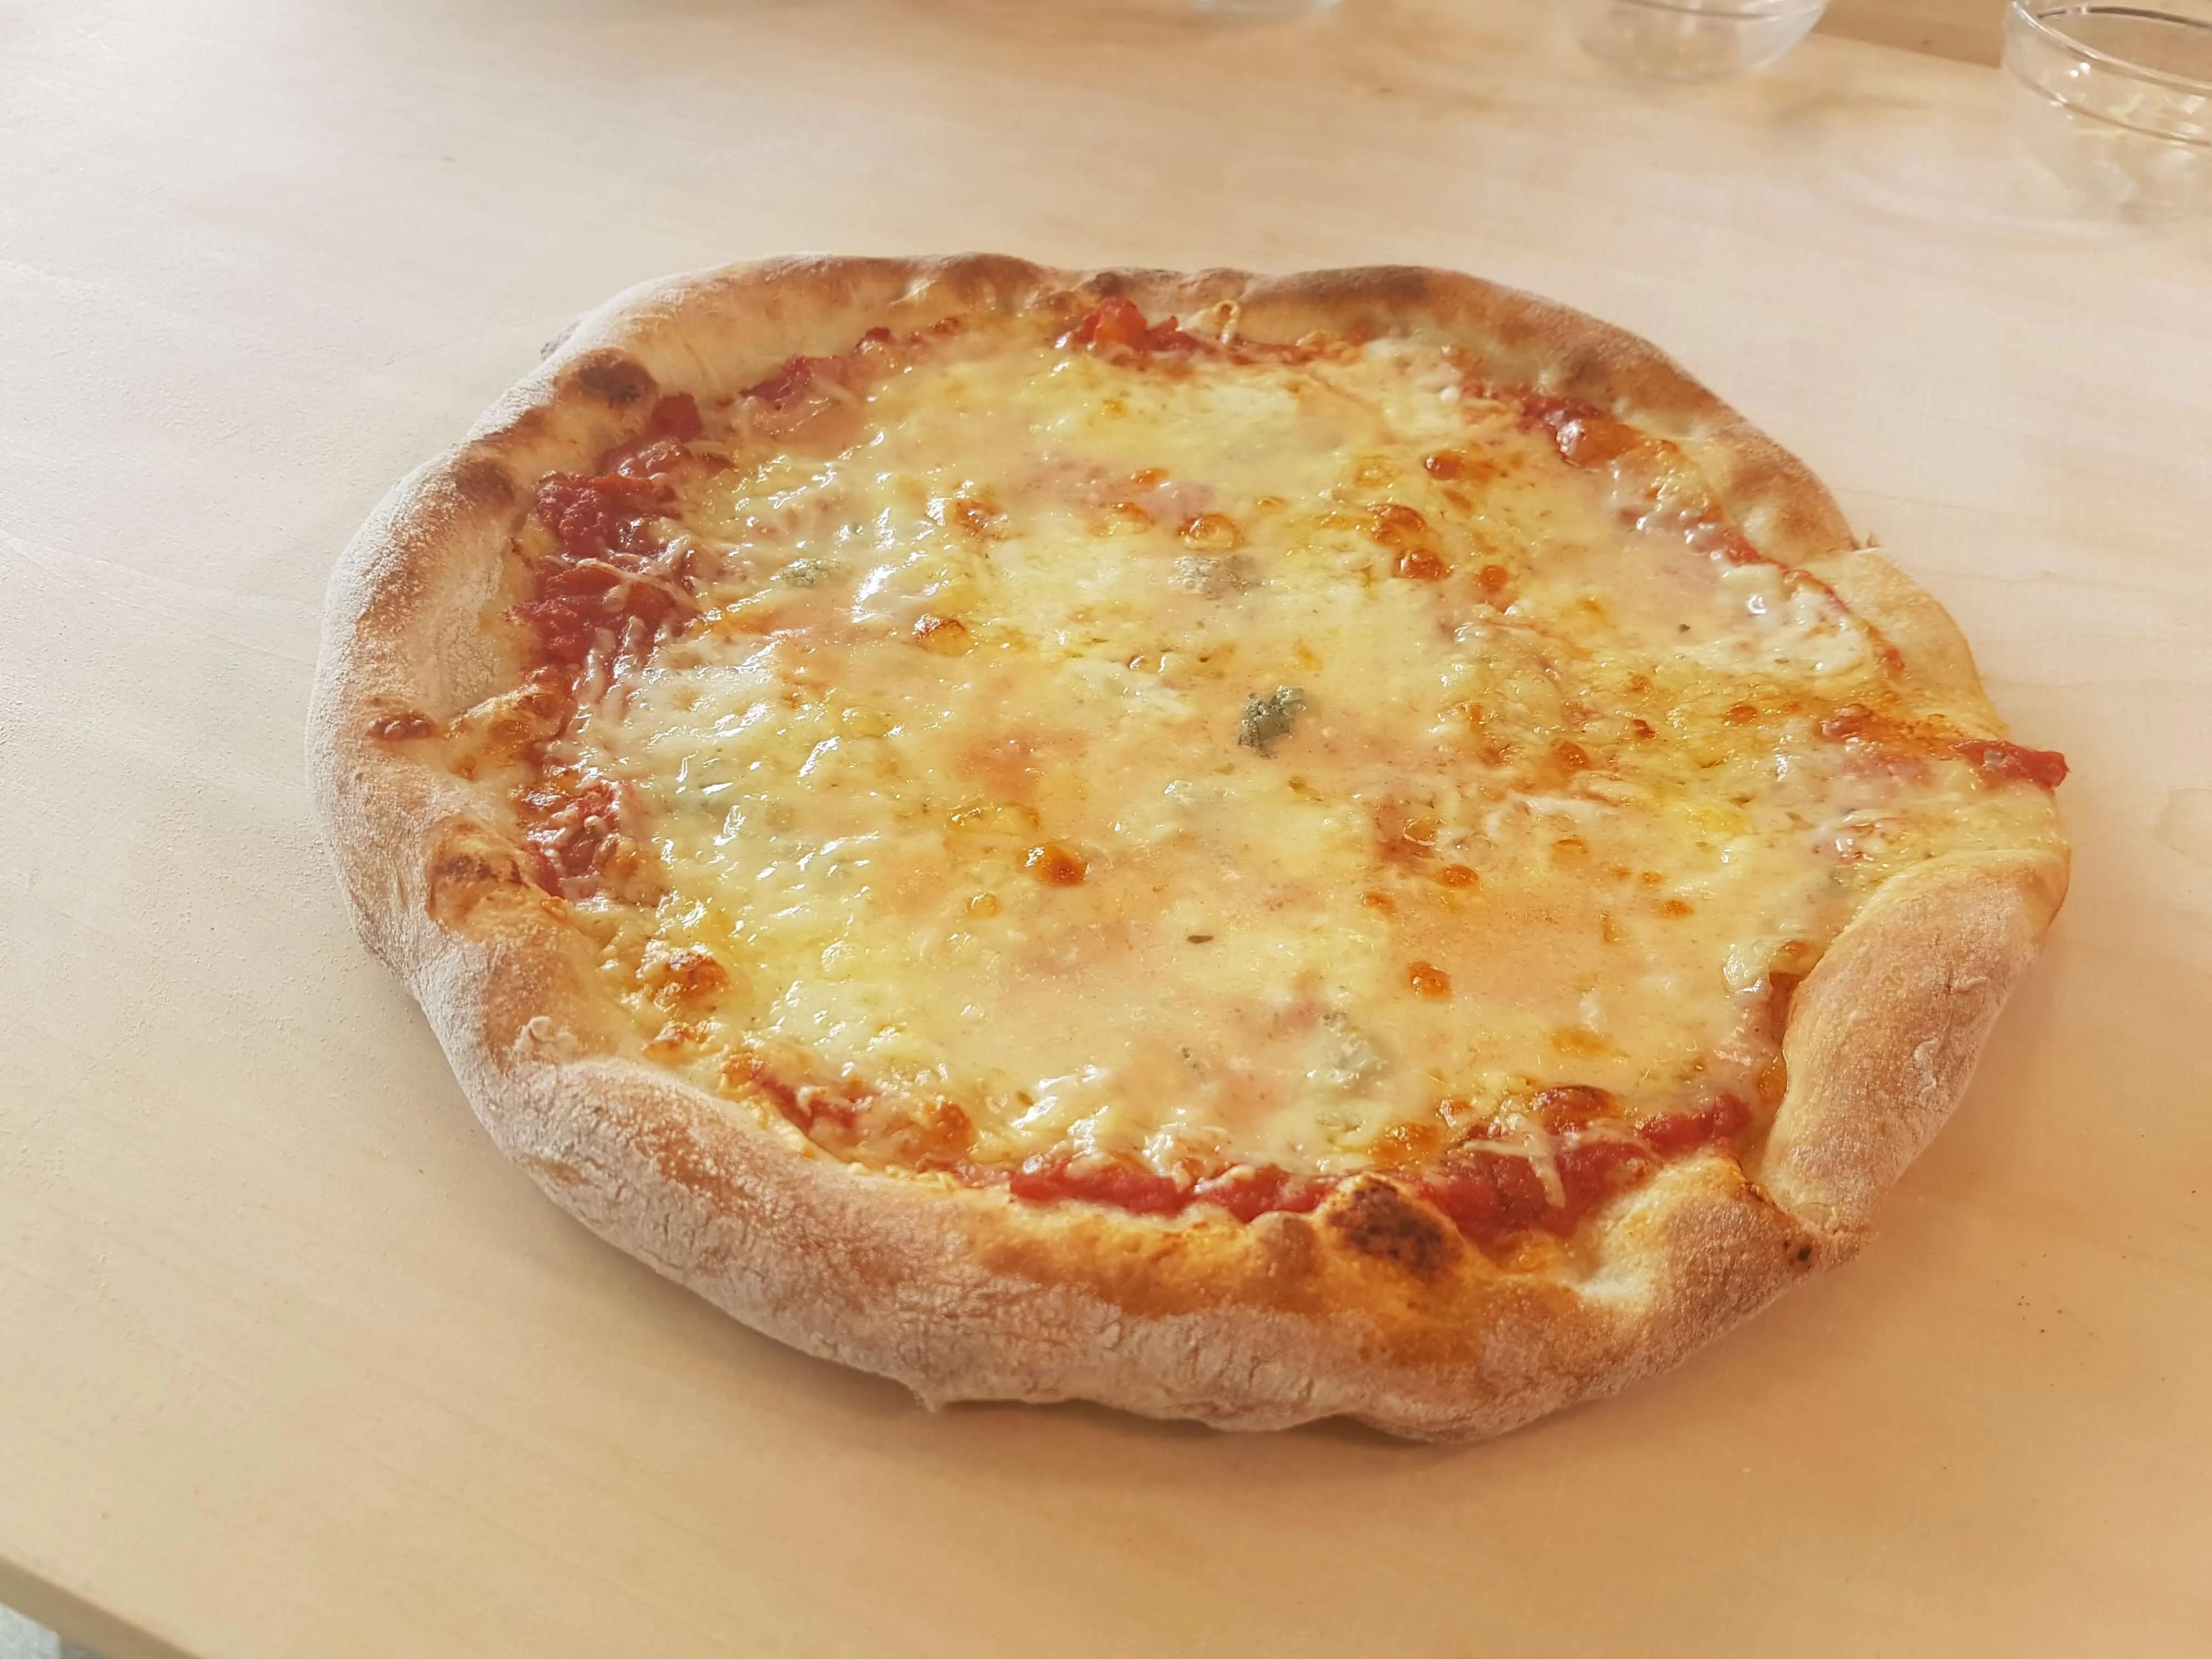 Pizza Quattro Formaggi | Pimotti Pizzastein - die Pizzeria für daheim!